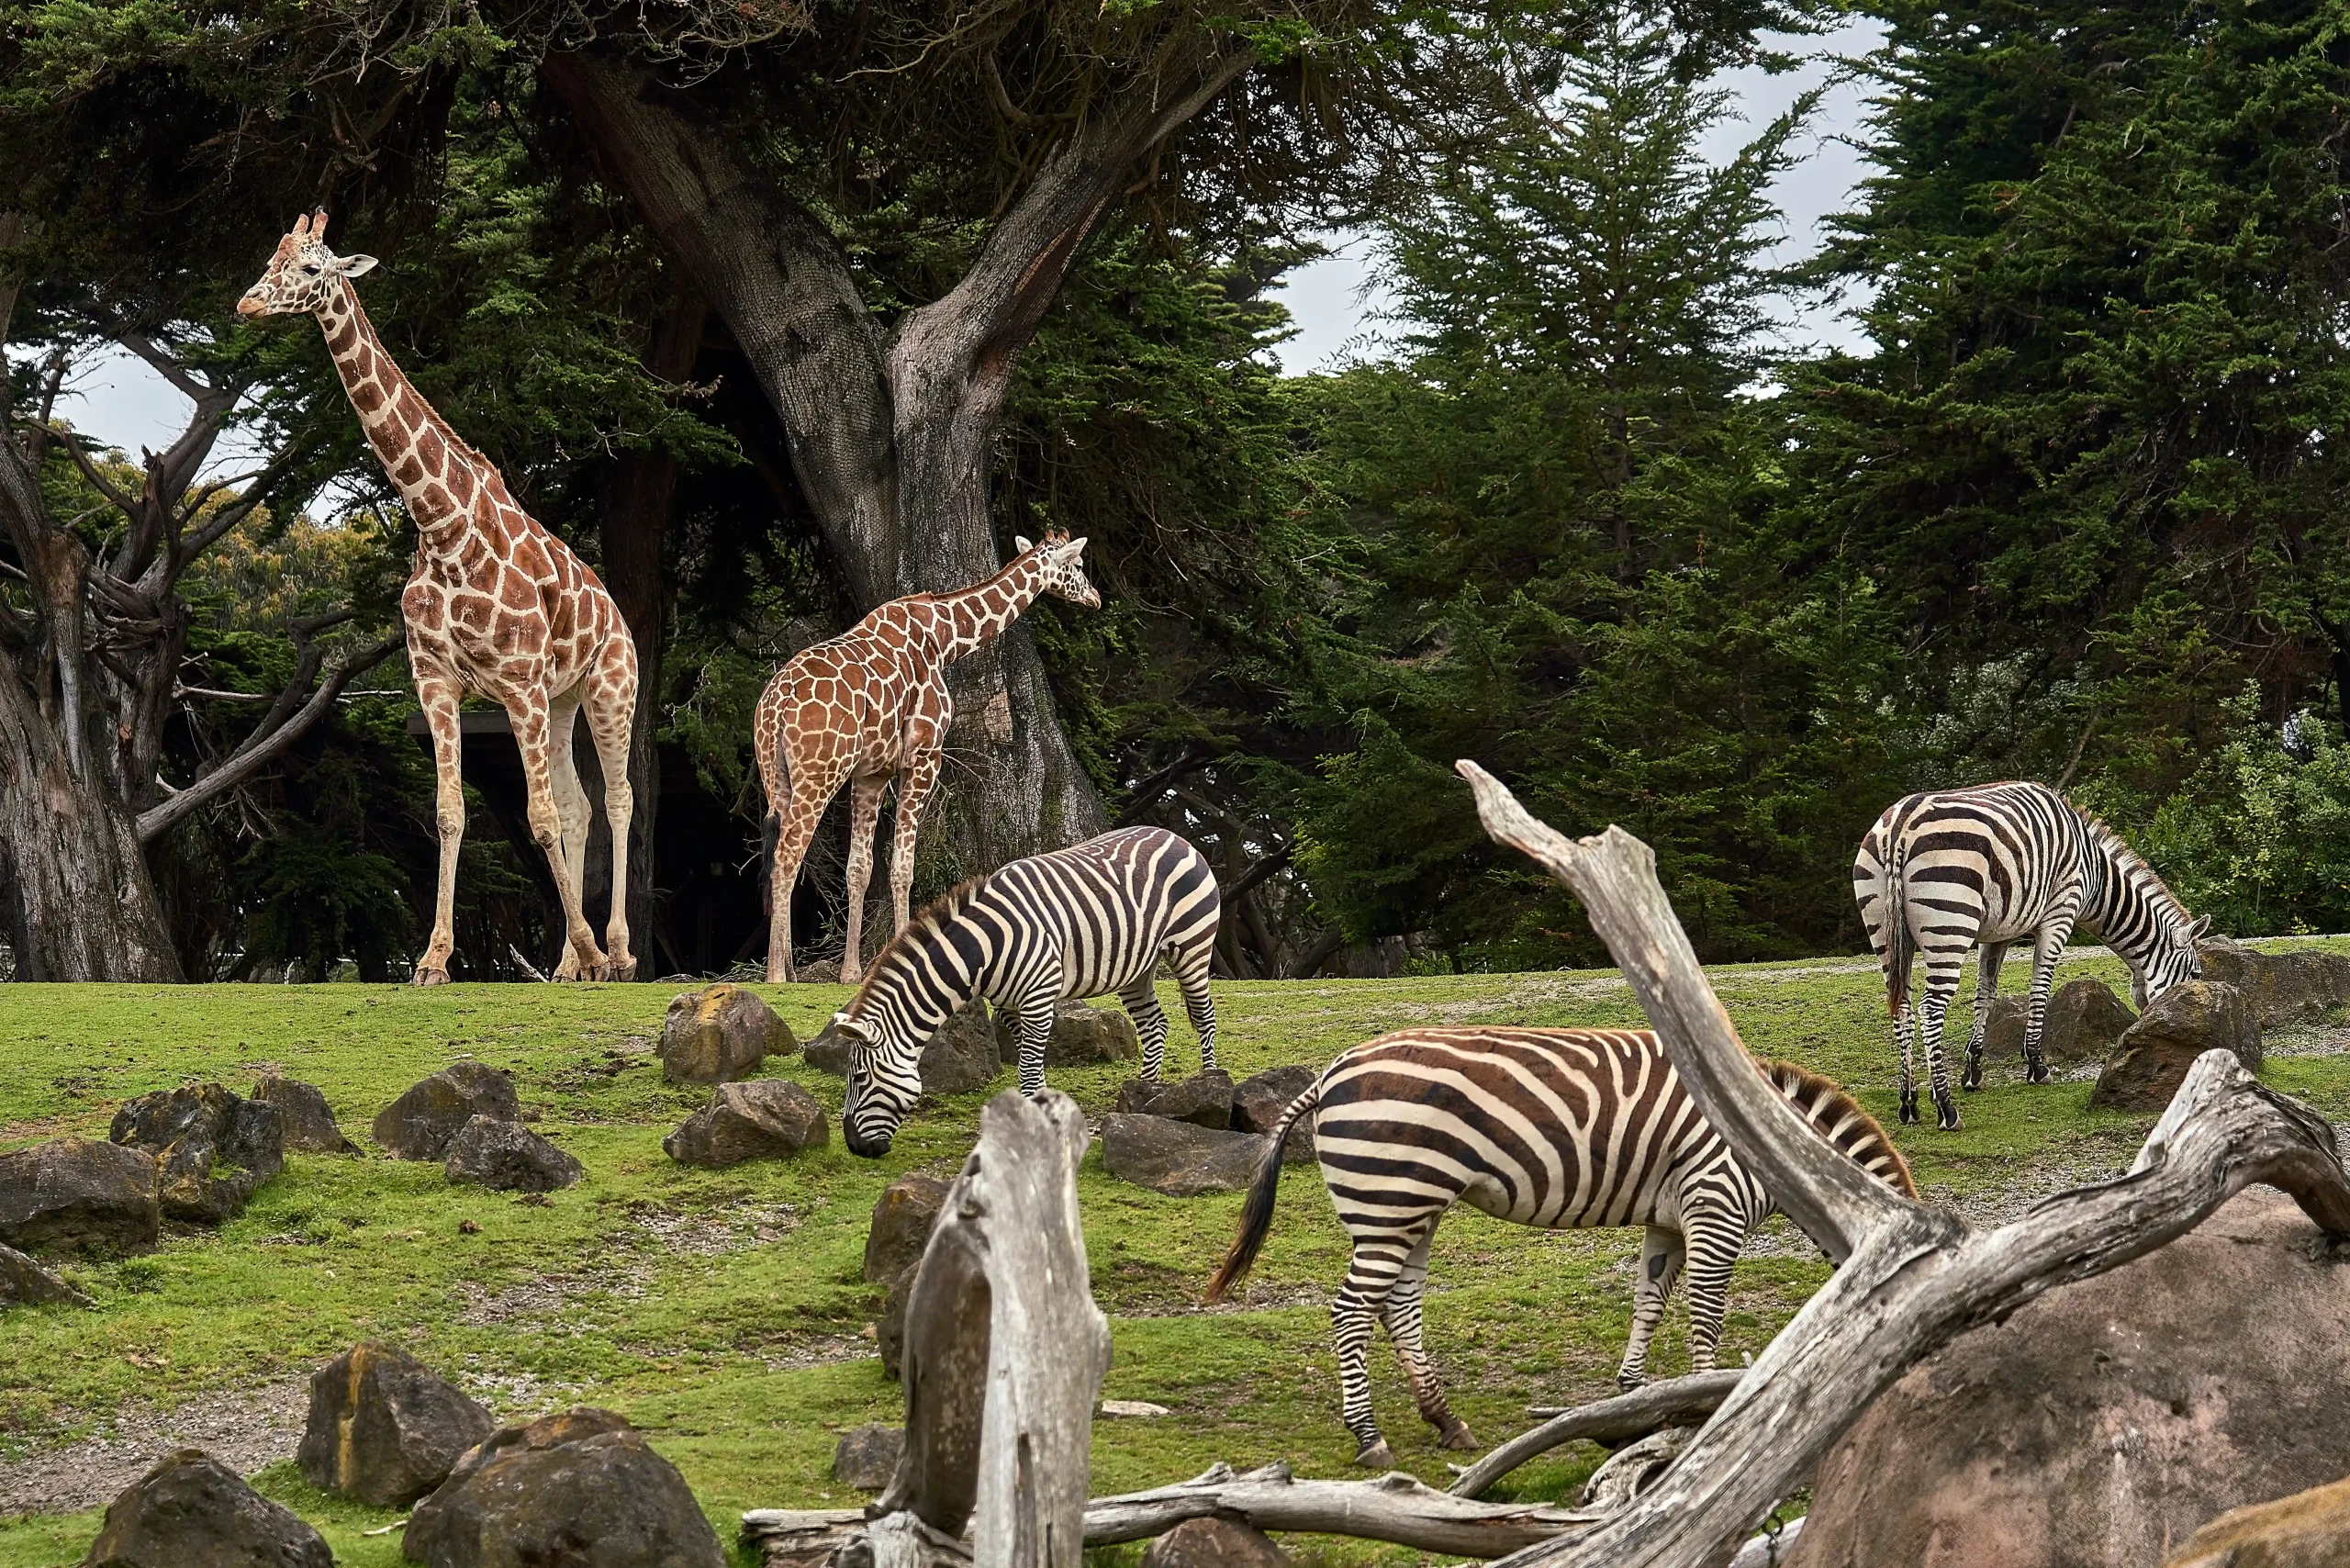 A zoo savanna exhibit with giraffes, zebras, and wildebeest 